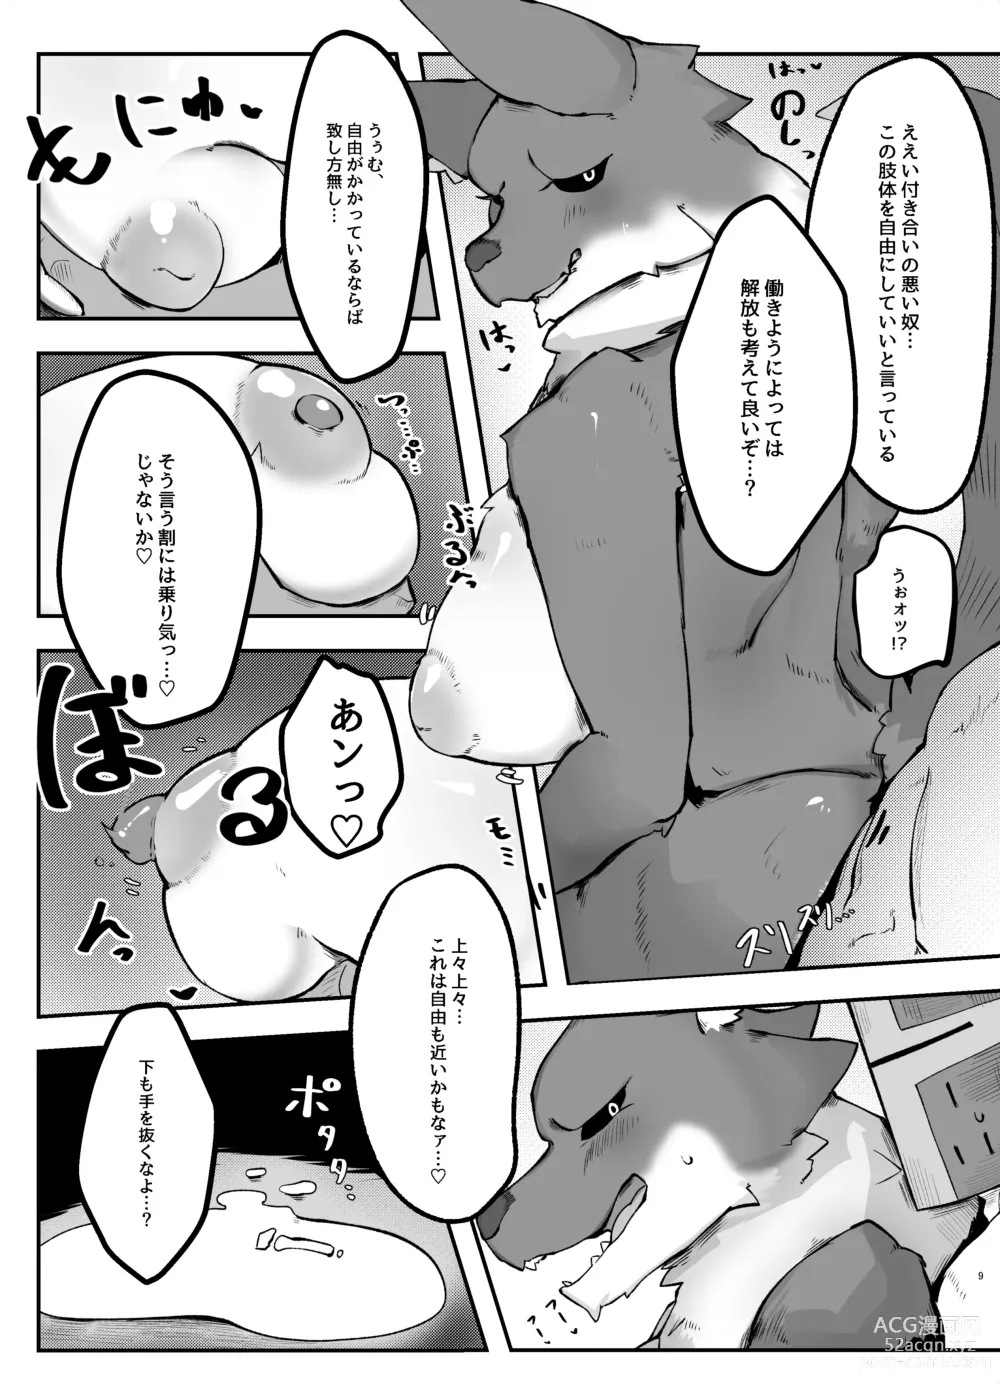 Page 9 of doujinshi Kukkoro kara hajimaru kemoero manga